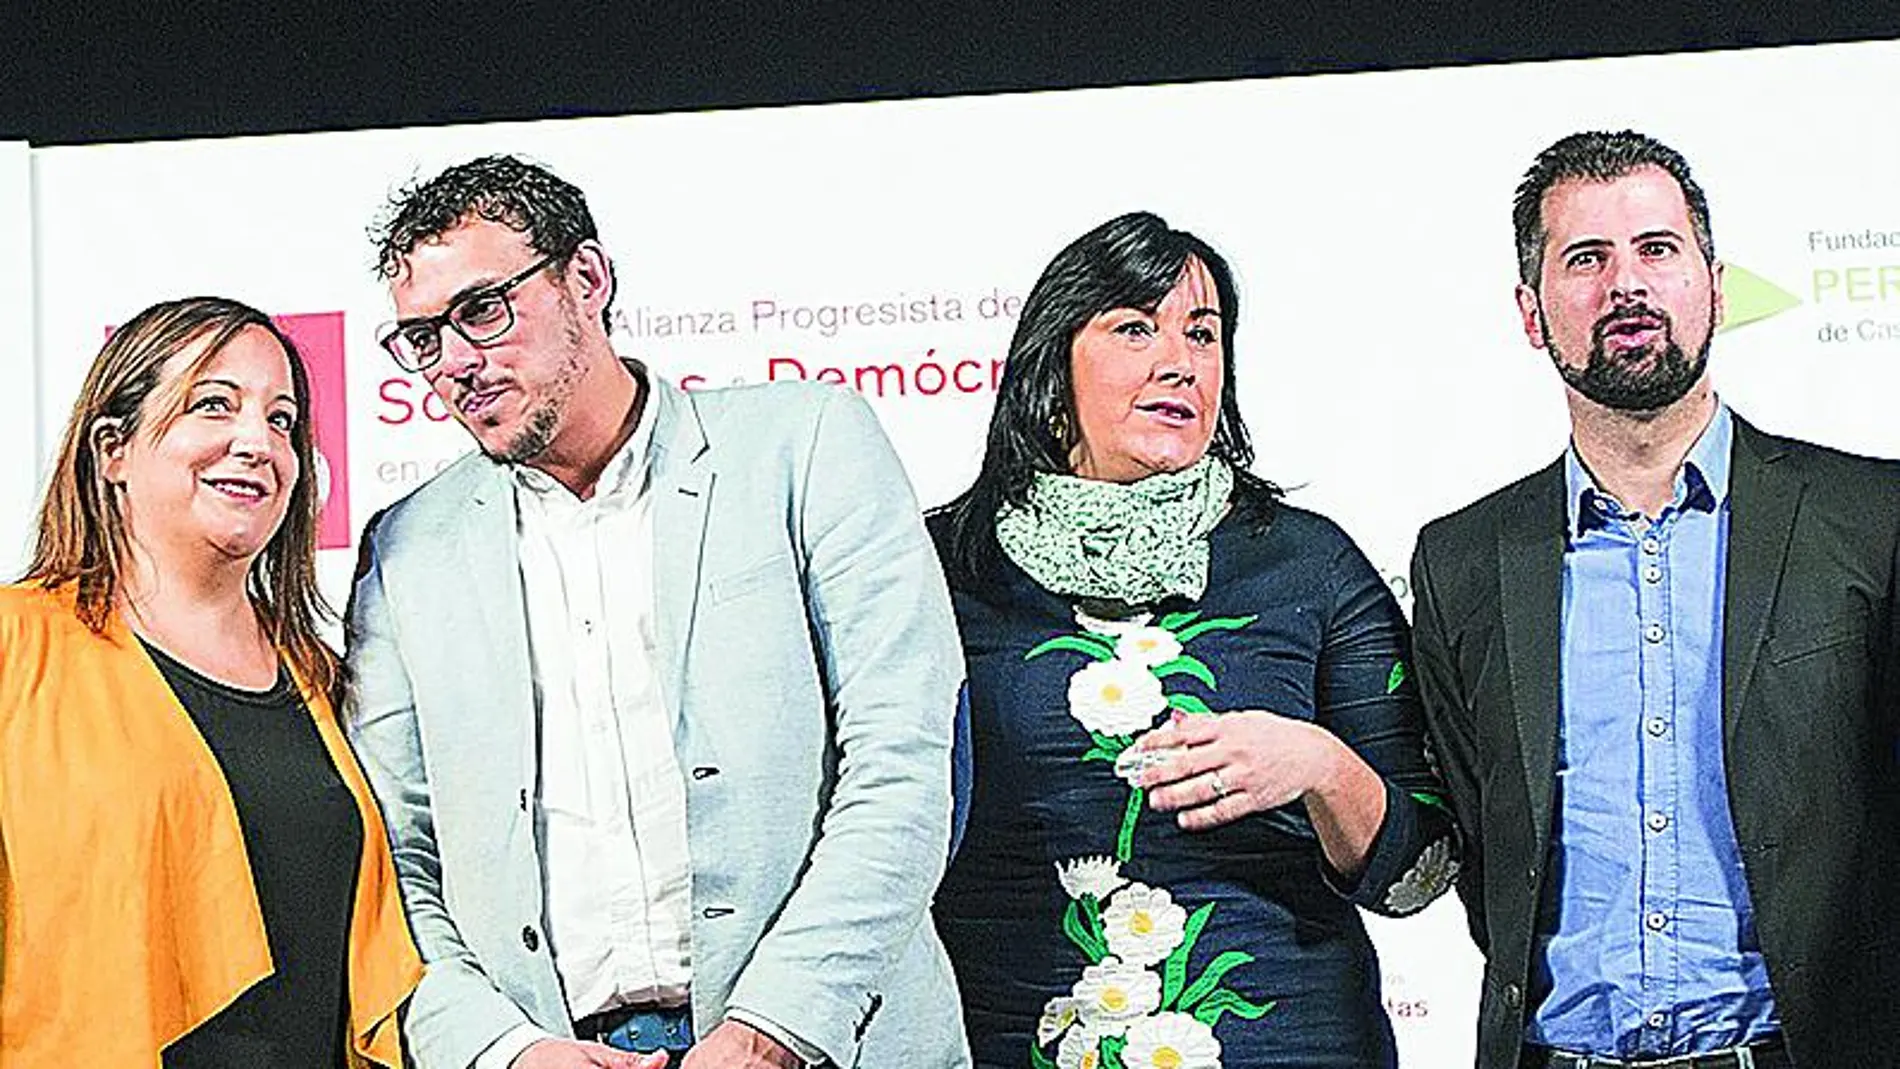 El líder socialista Luis Tudanca durante el foro de debate de Toro, acompañado de la eurodiputada Iratxe García, el alcalde Tomás del Bien y Ana Sánchez